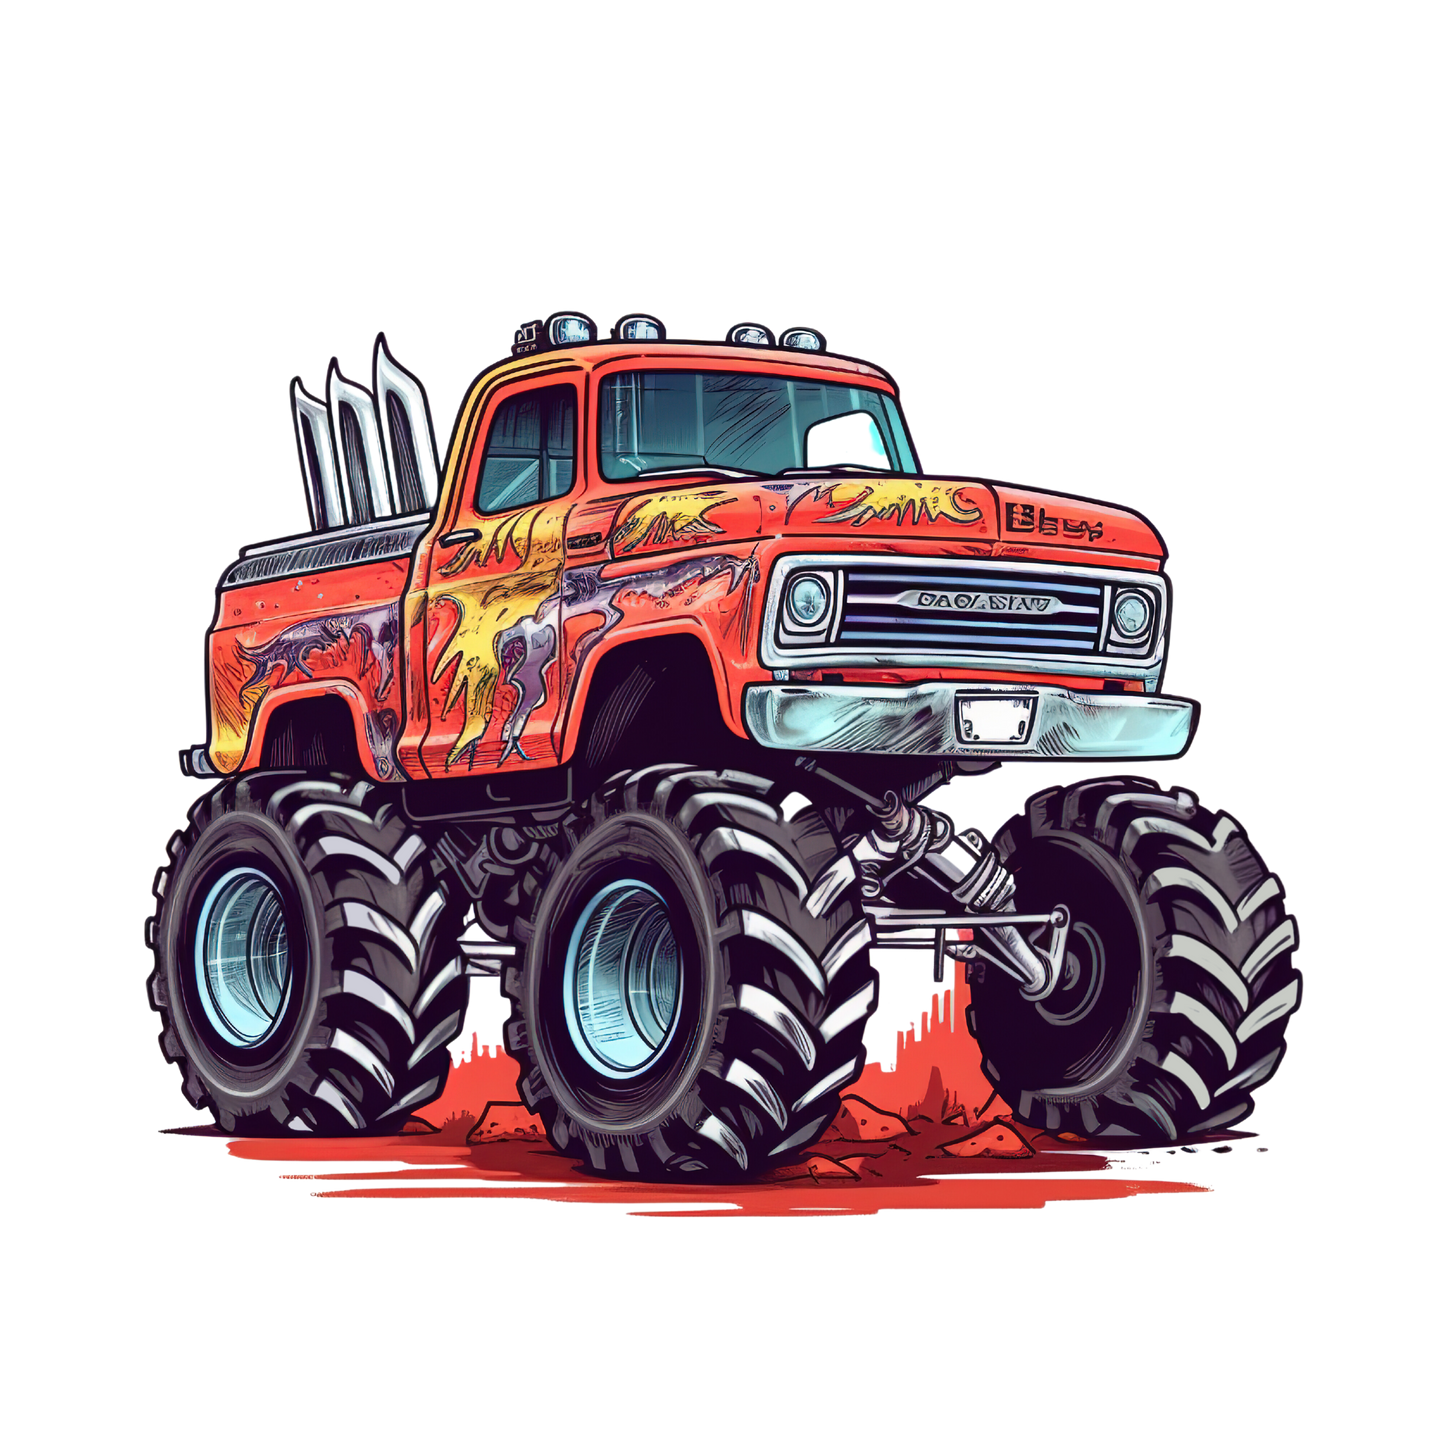 Monster Truck Theme